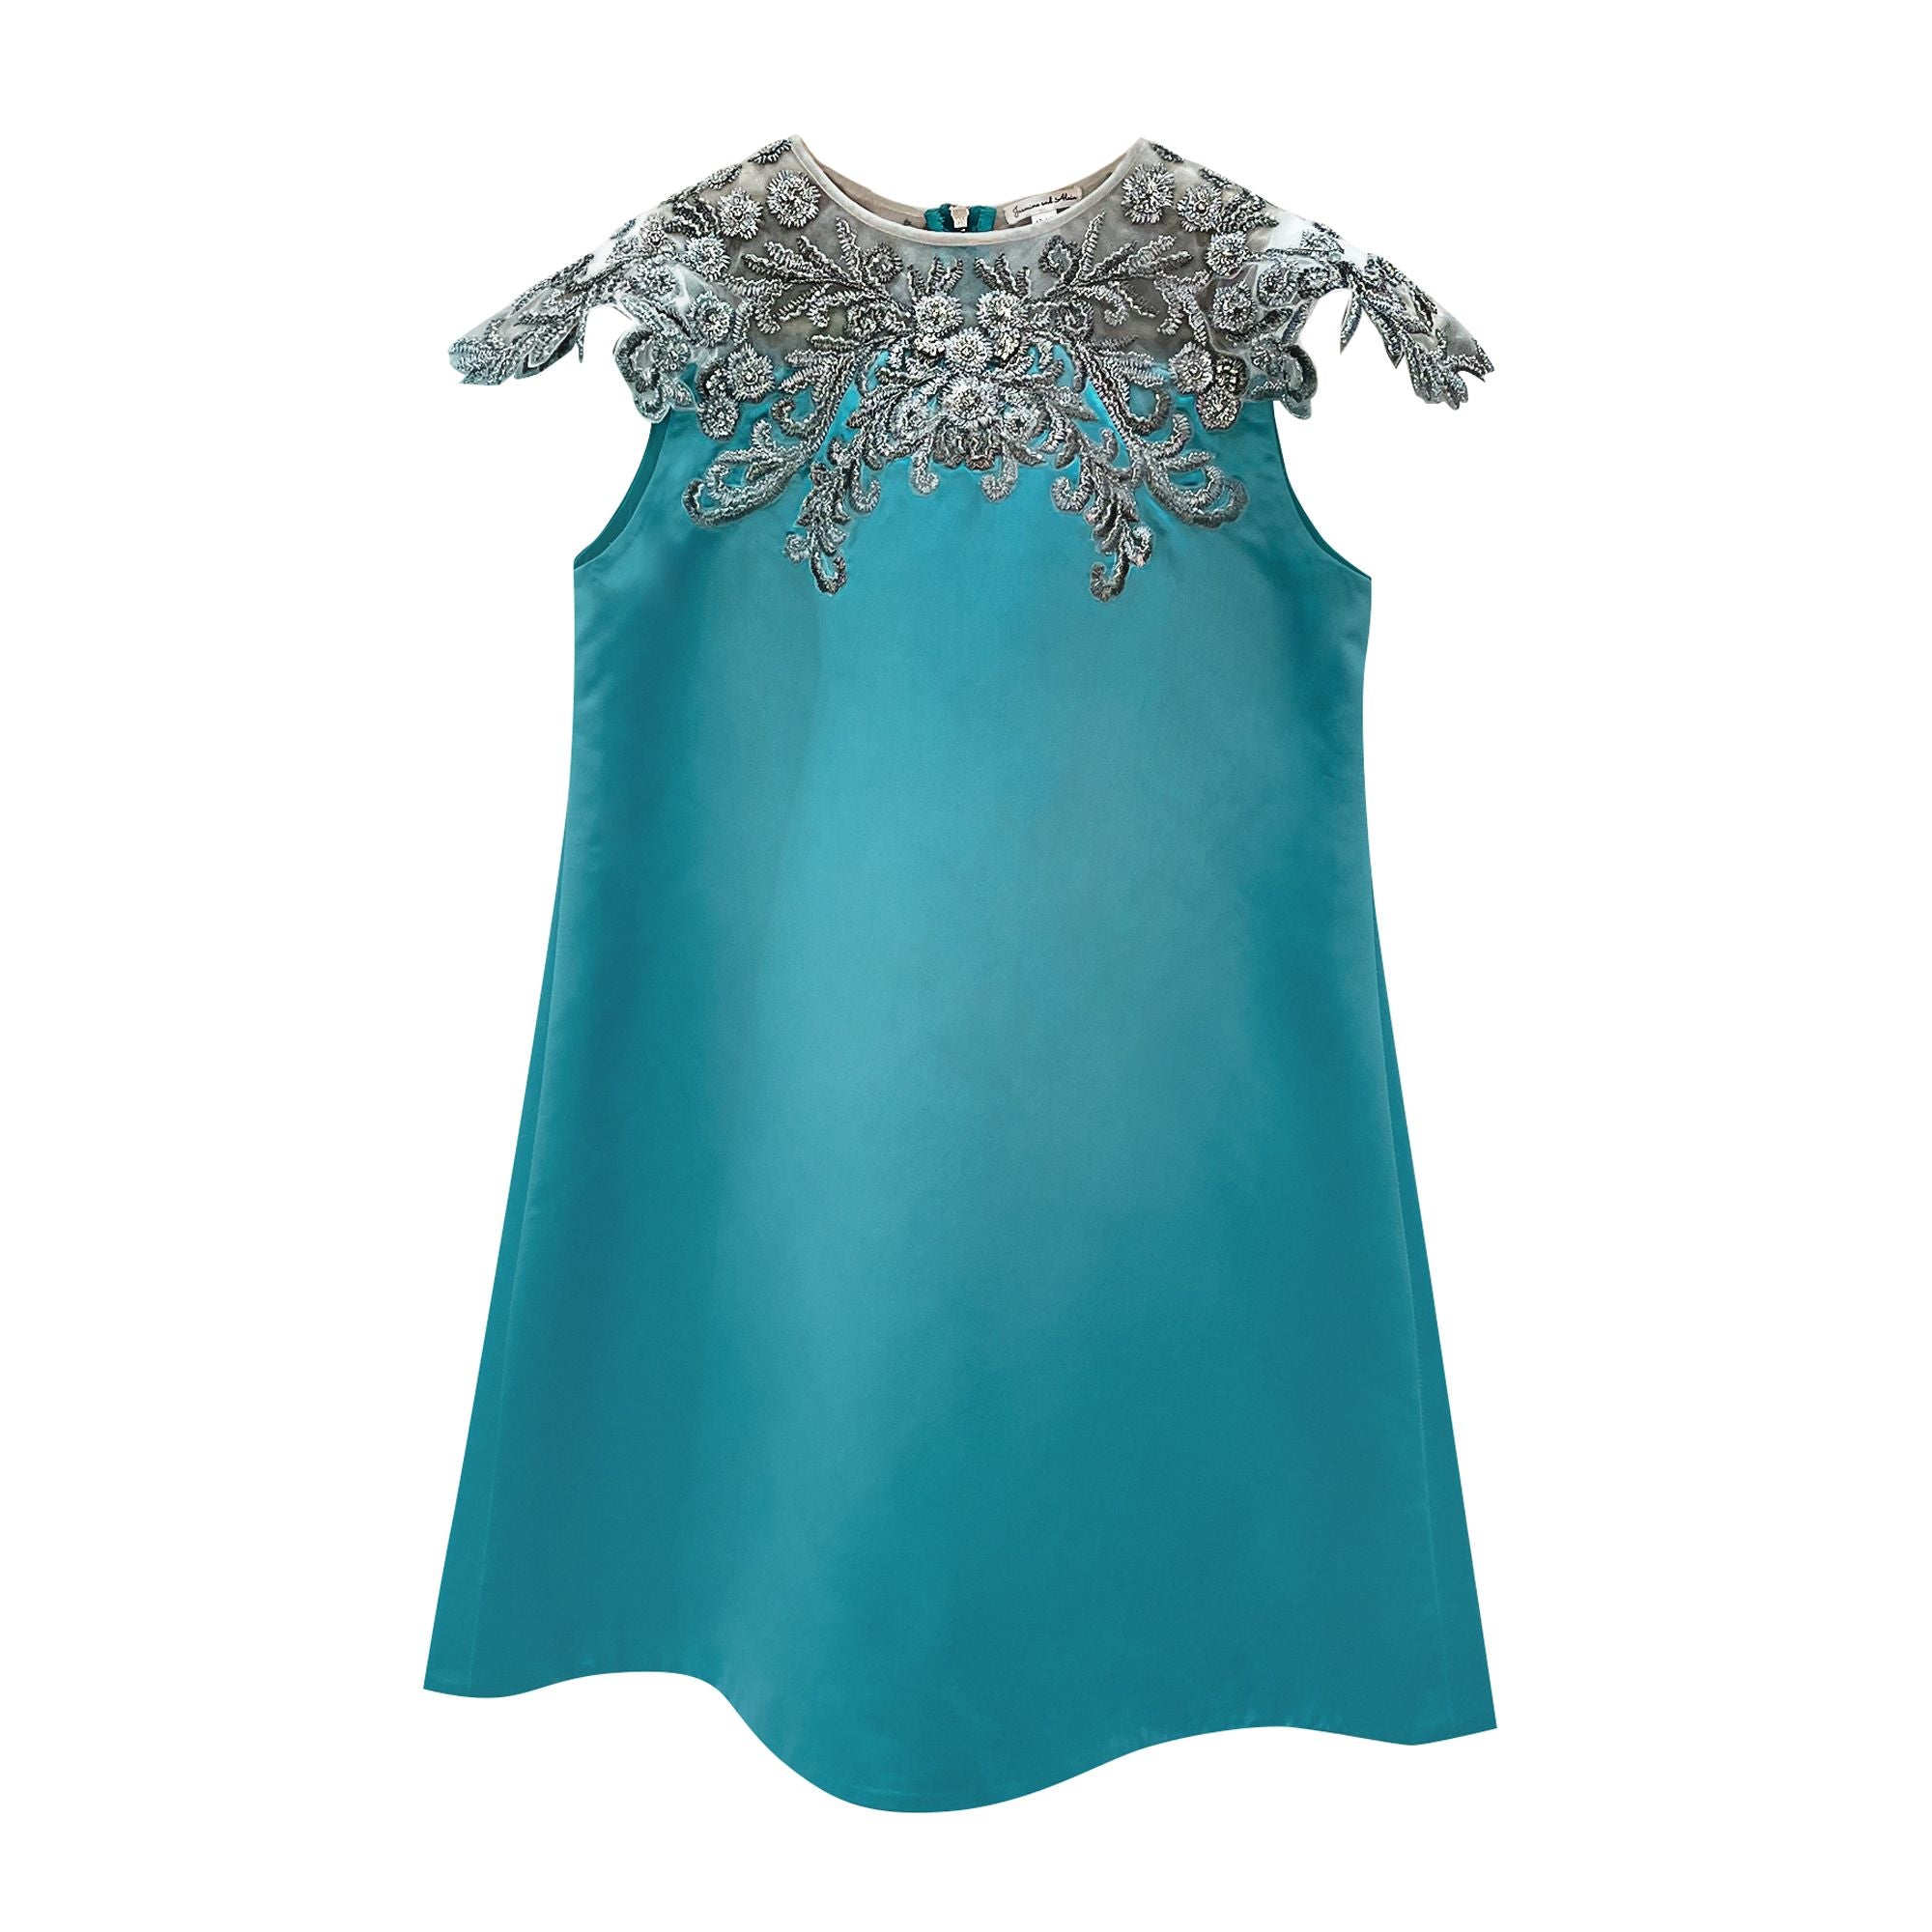 The Raisa Embellished Dress